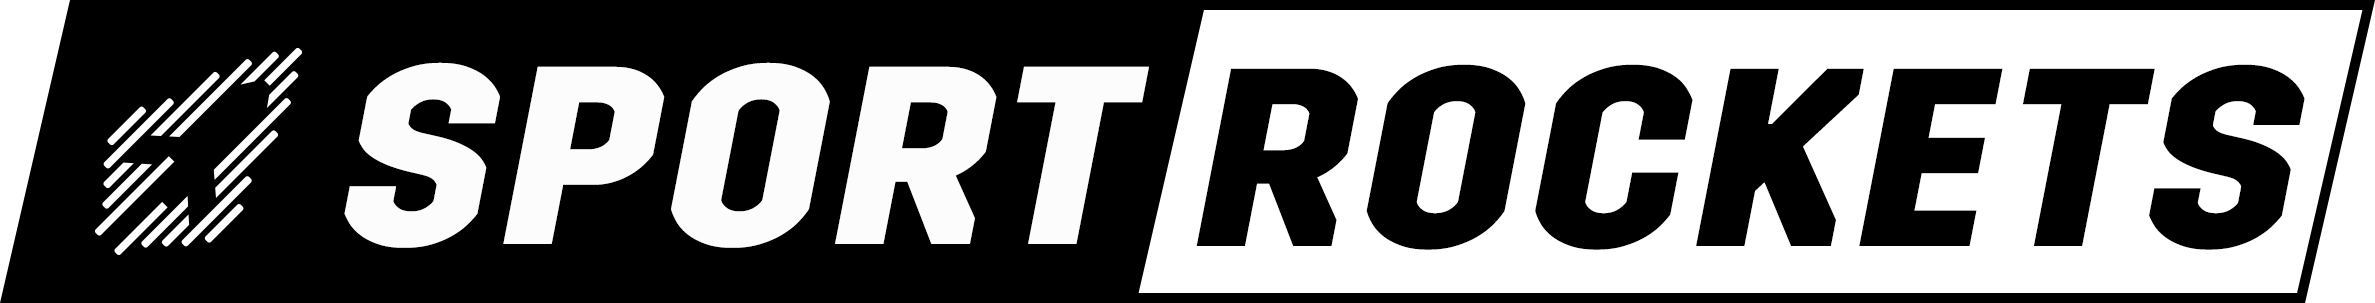 logo sportrockets